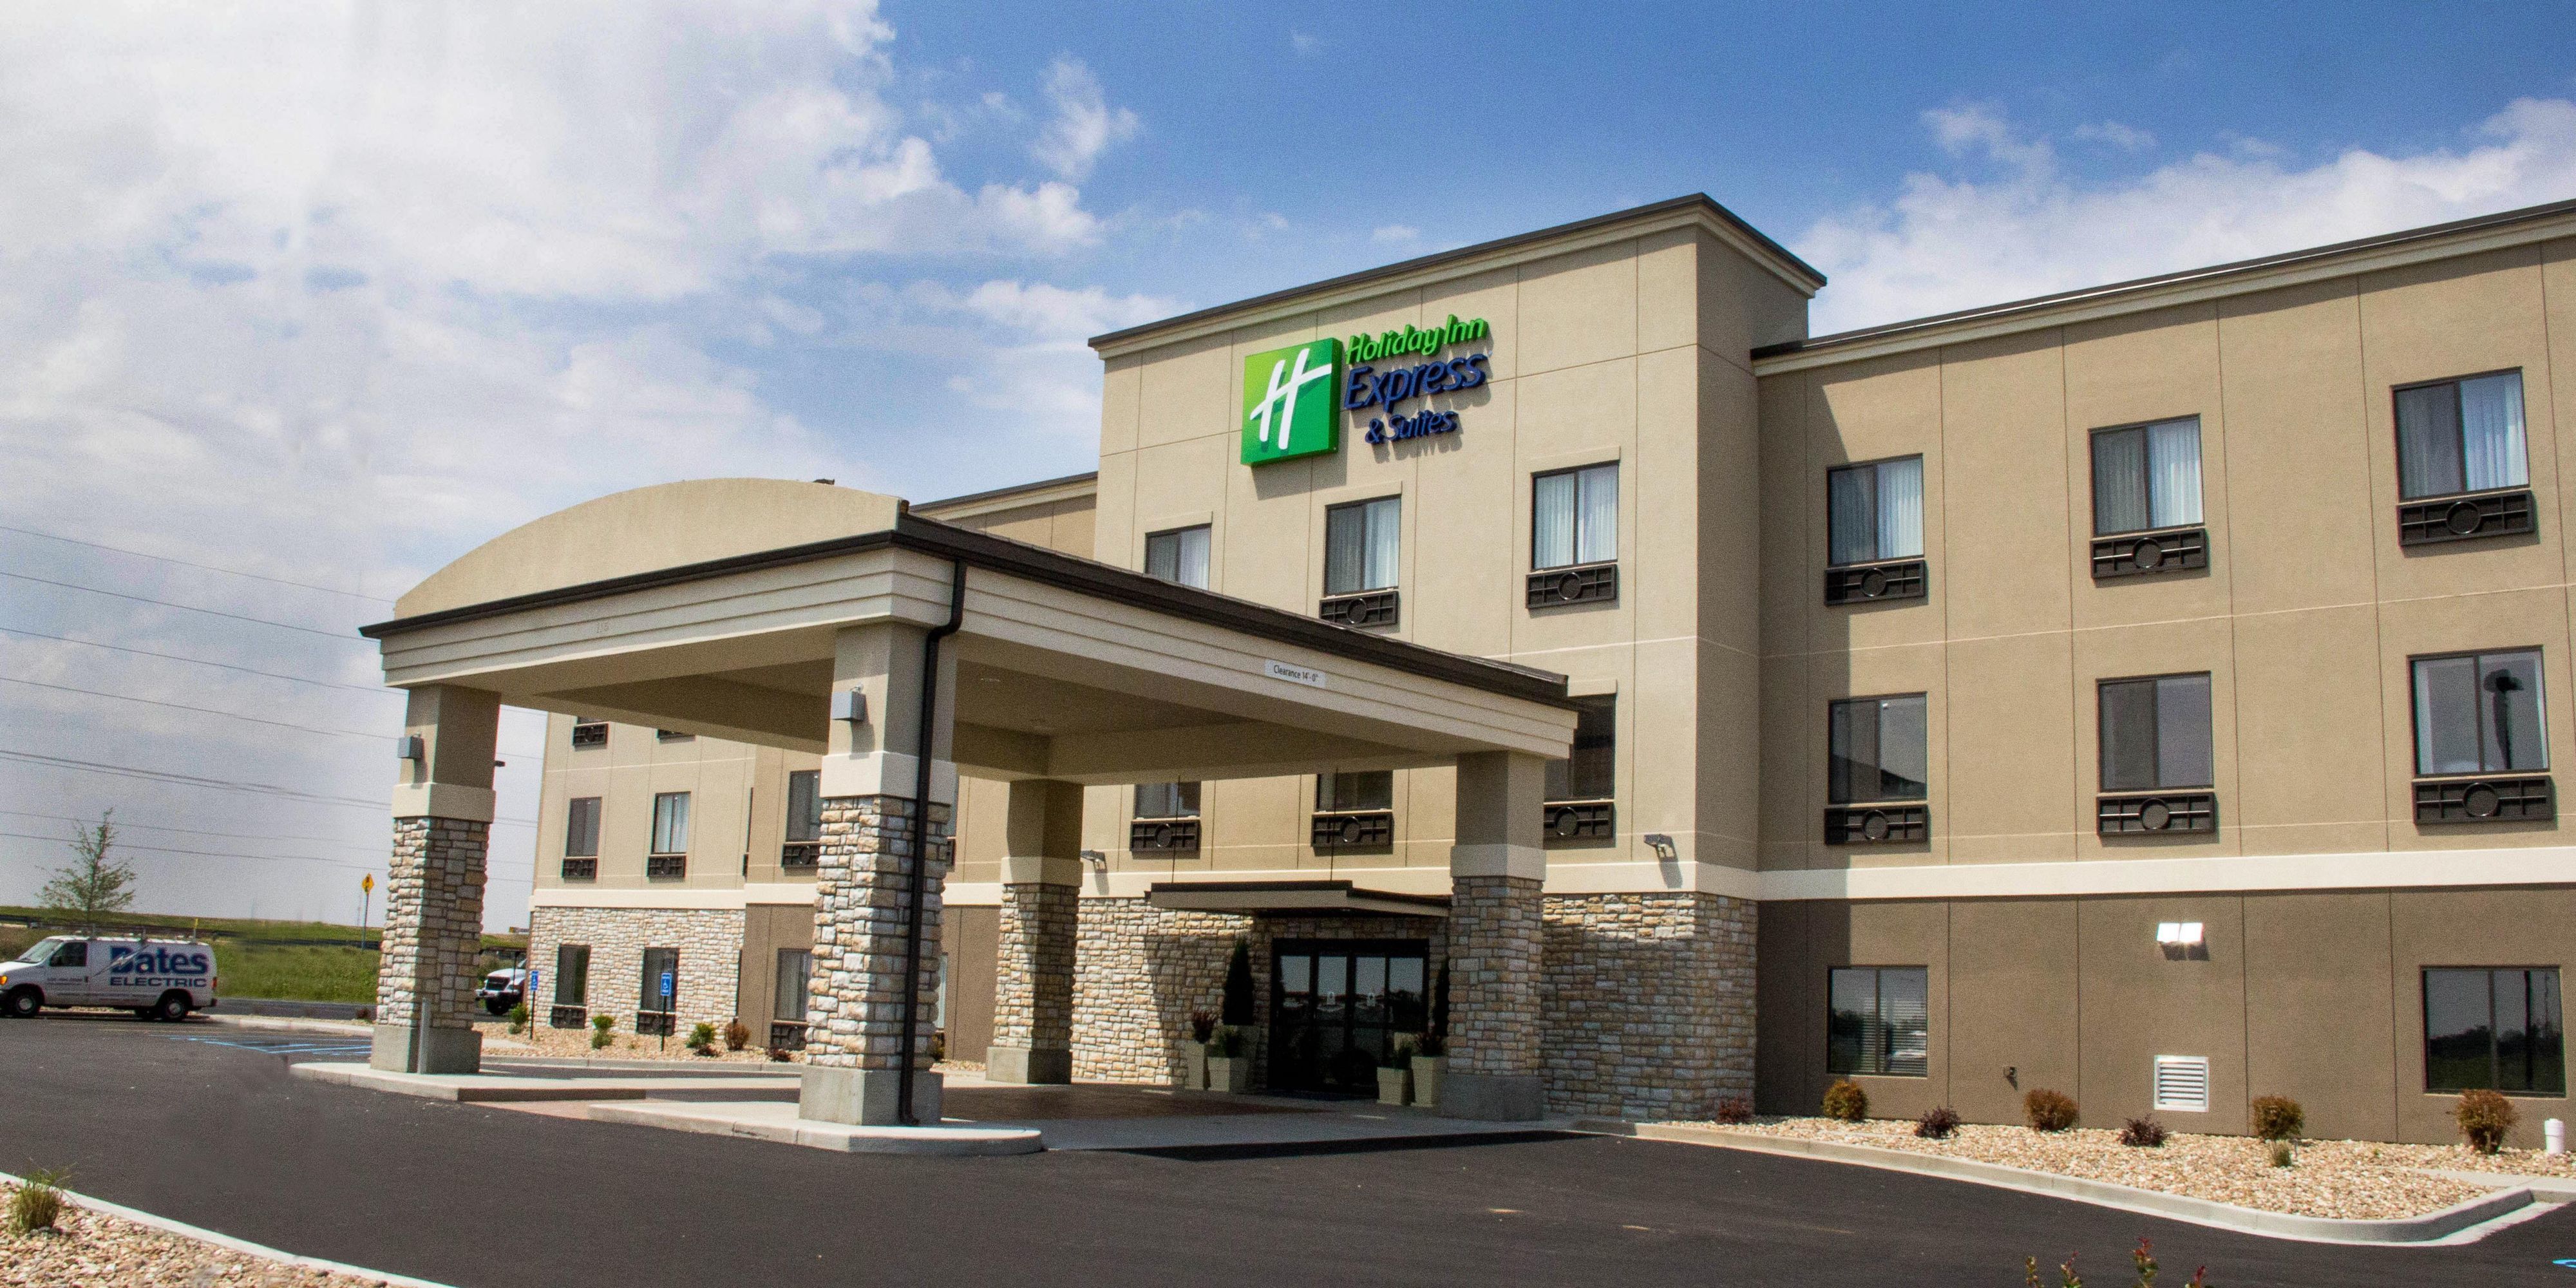 Photo of Holiday Inn Express & Suites Sikeston, Sikeston, MO